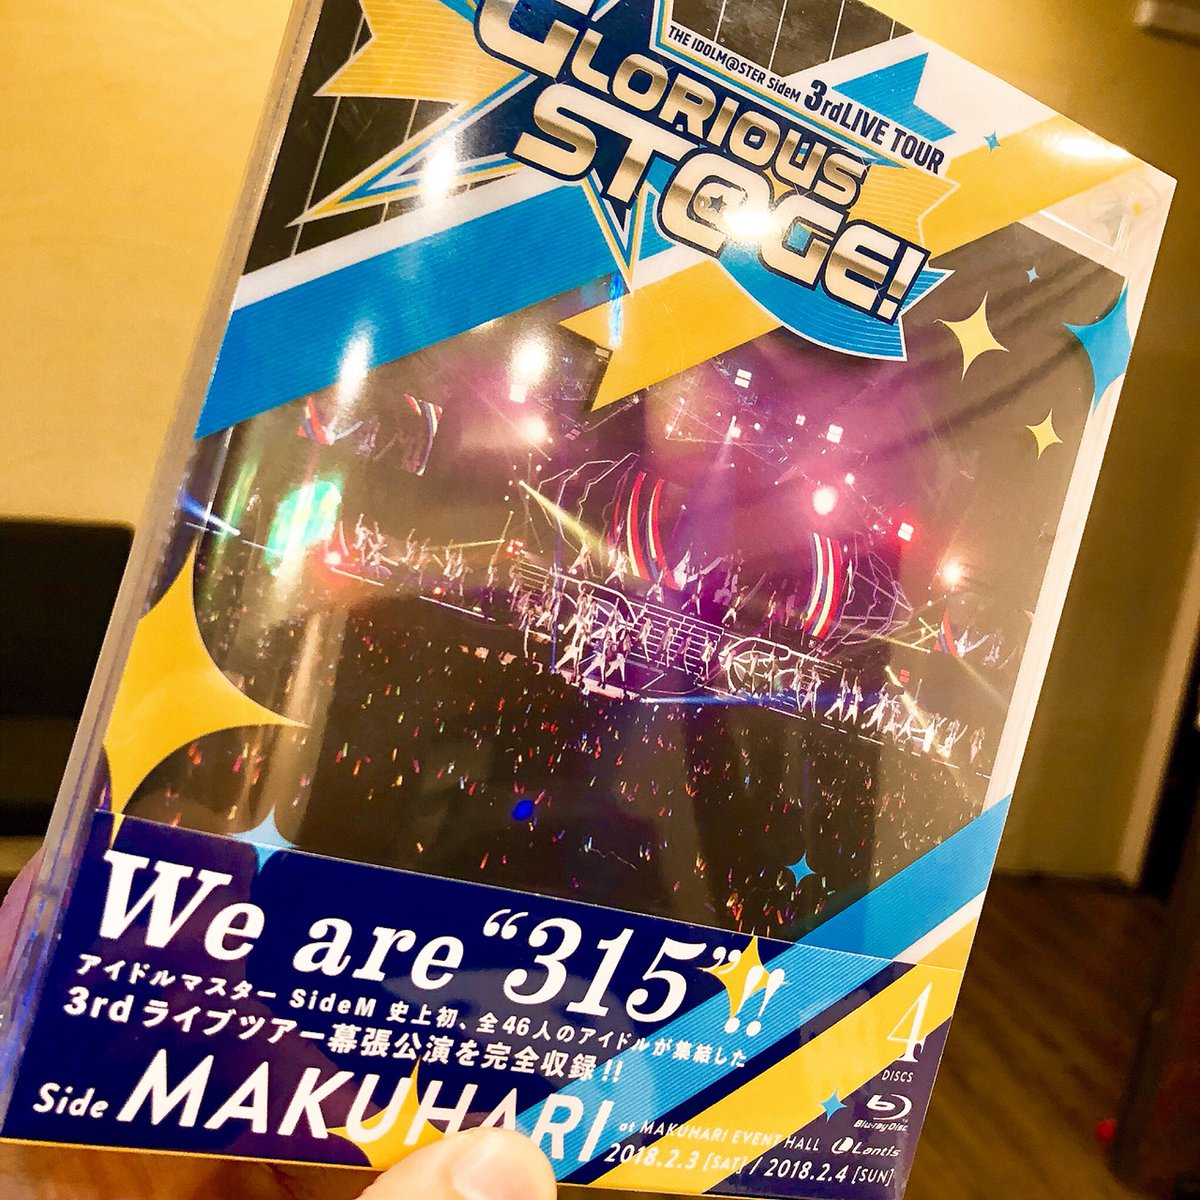 Effy 本日11 7発売 The Idolm Ster Sidem 3rdlive Tour Glorious St Ge Live Blu Ray Side Makuhari のオープニングseの作曲を担当しています どうぞお楽しみくださいませ Sidem T Co By3jyaqgfr